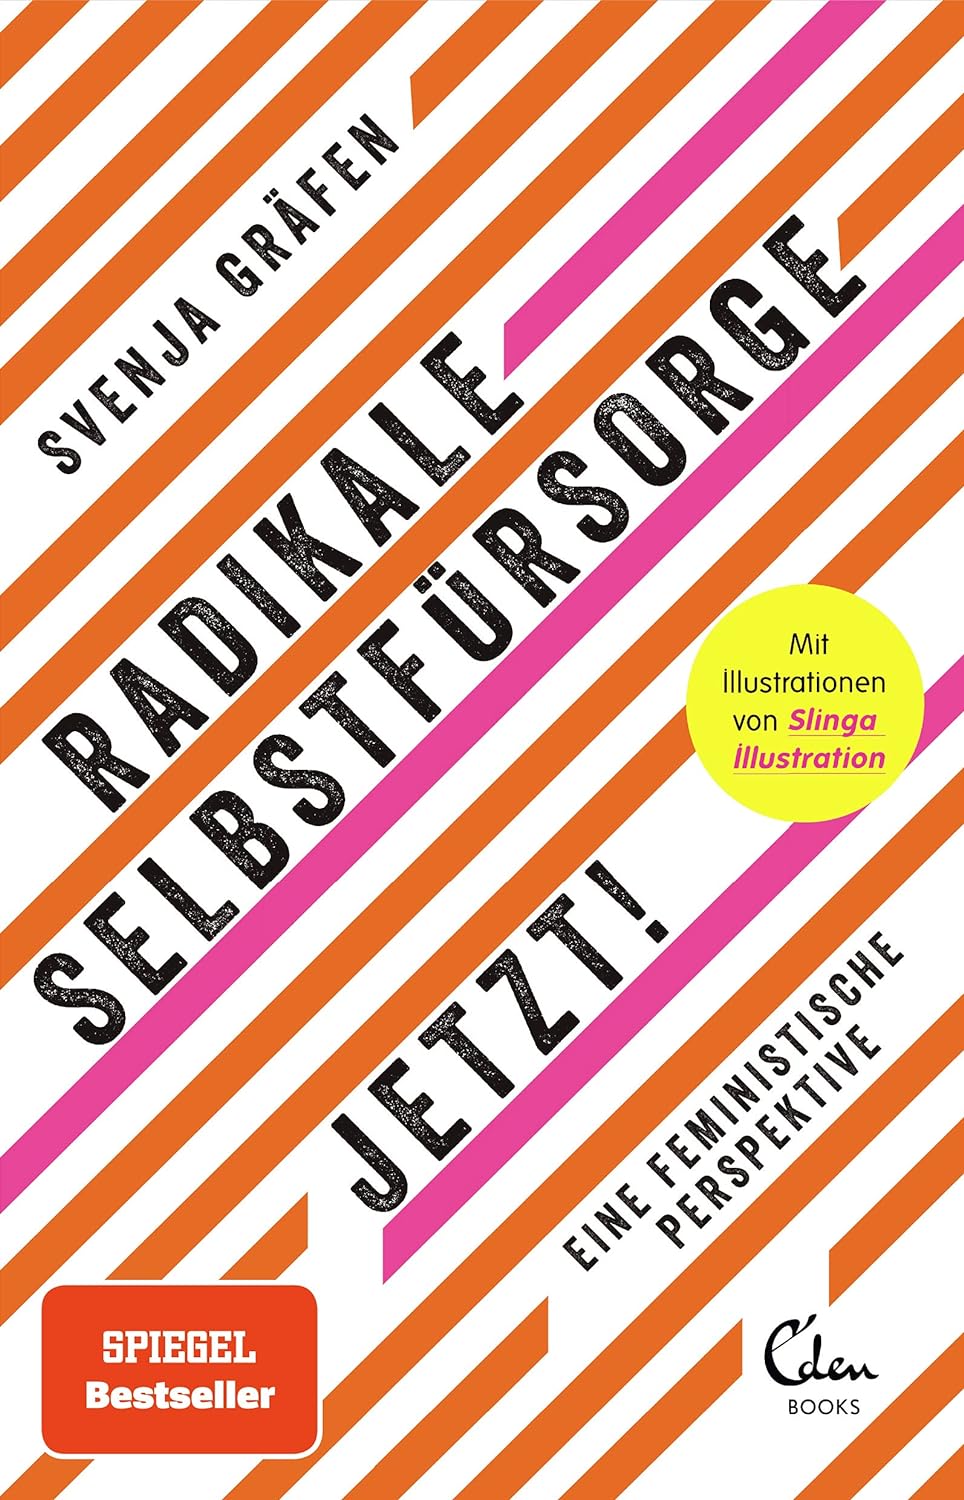 Radikale Selbstfürsorge. Jetzt!: Eine feministische Perspektive (german language, Eden Books)